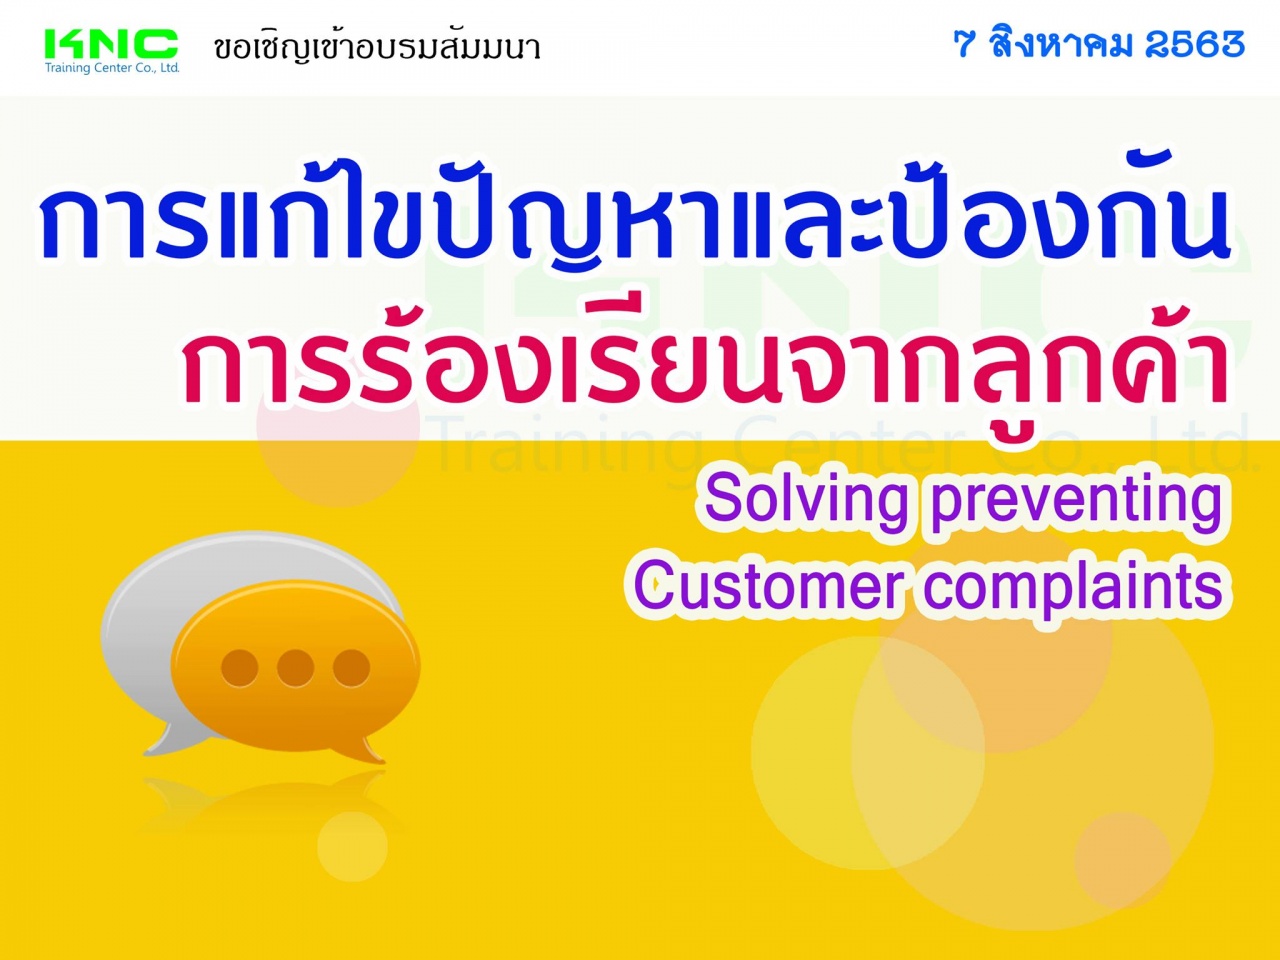 การแก้ไขปัญหาและป้องกันการร้องเรียนจากลูกค้า (Solving preventing Customer complaints)